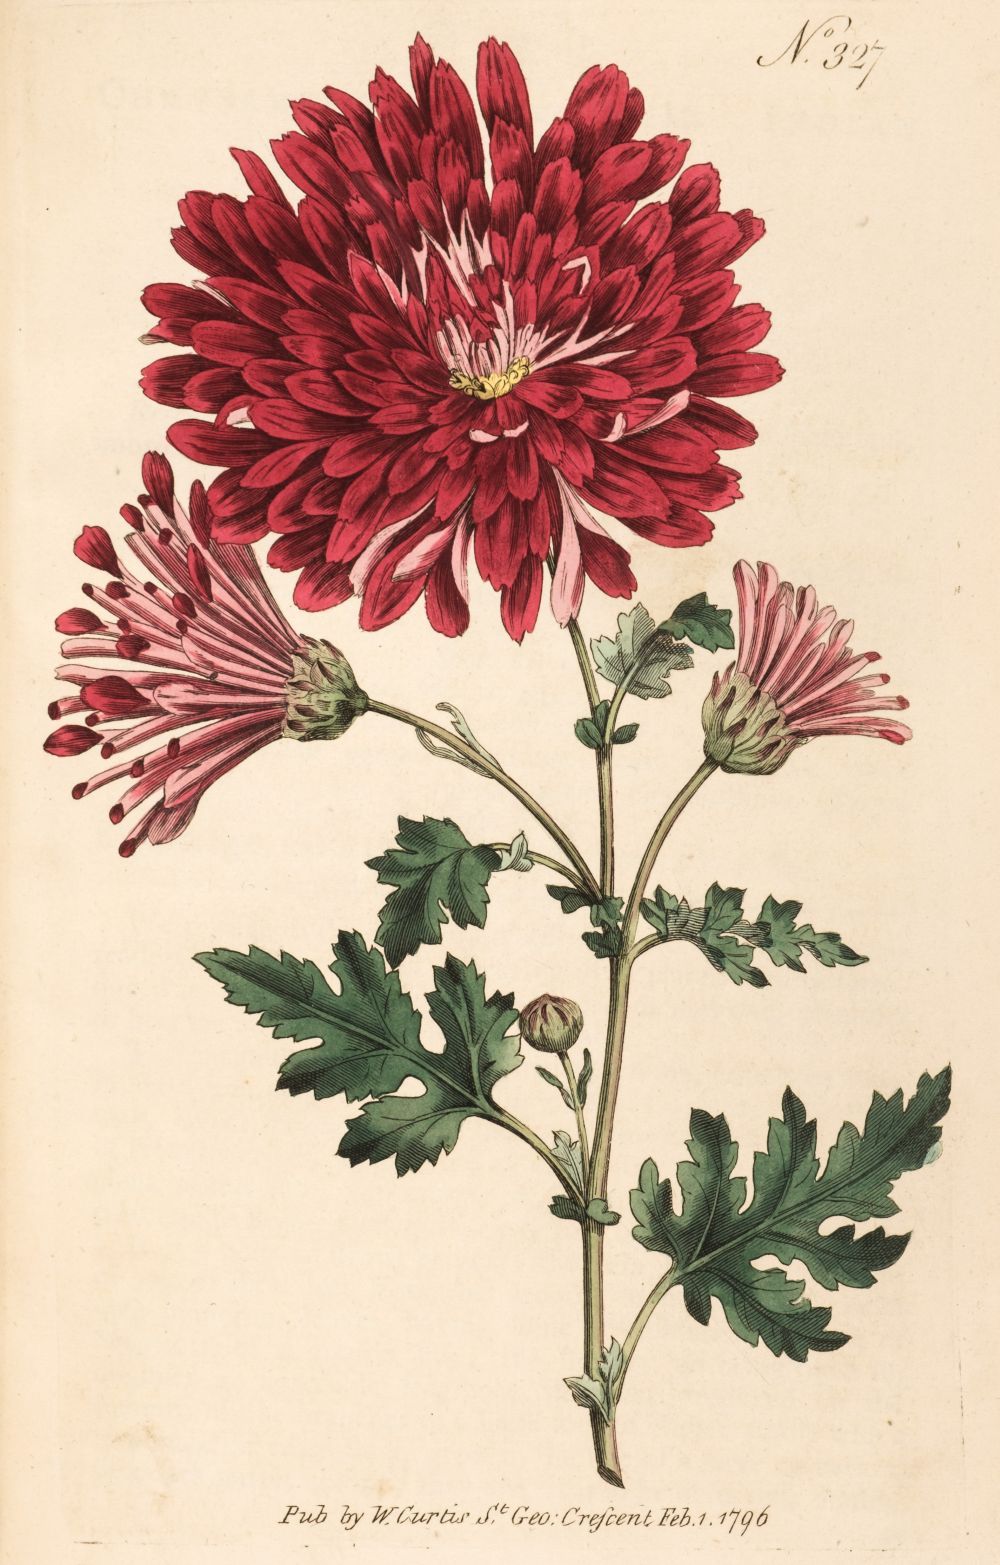 Curtis (William). The Botanical Magazine or Flower-Garden Displayed, volume IX, 1795